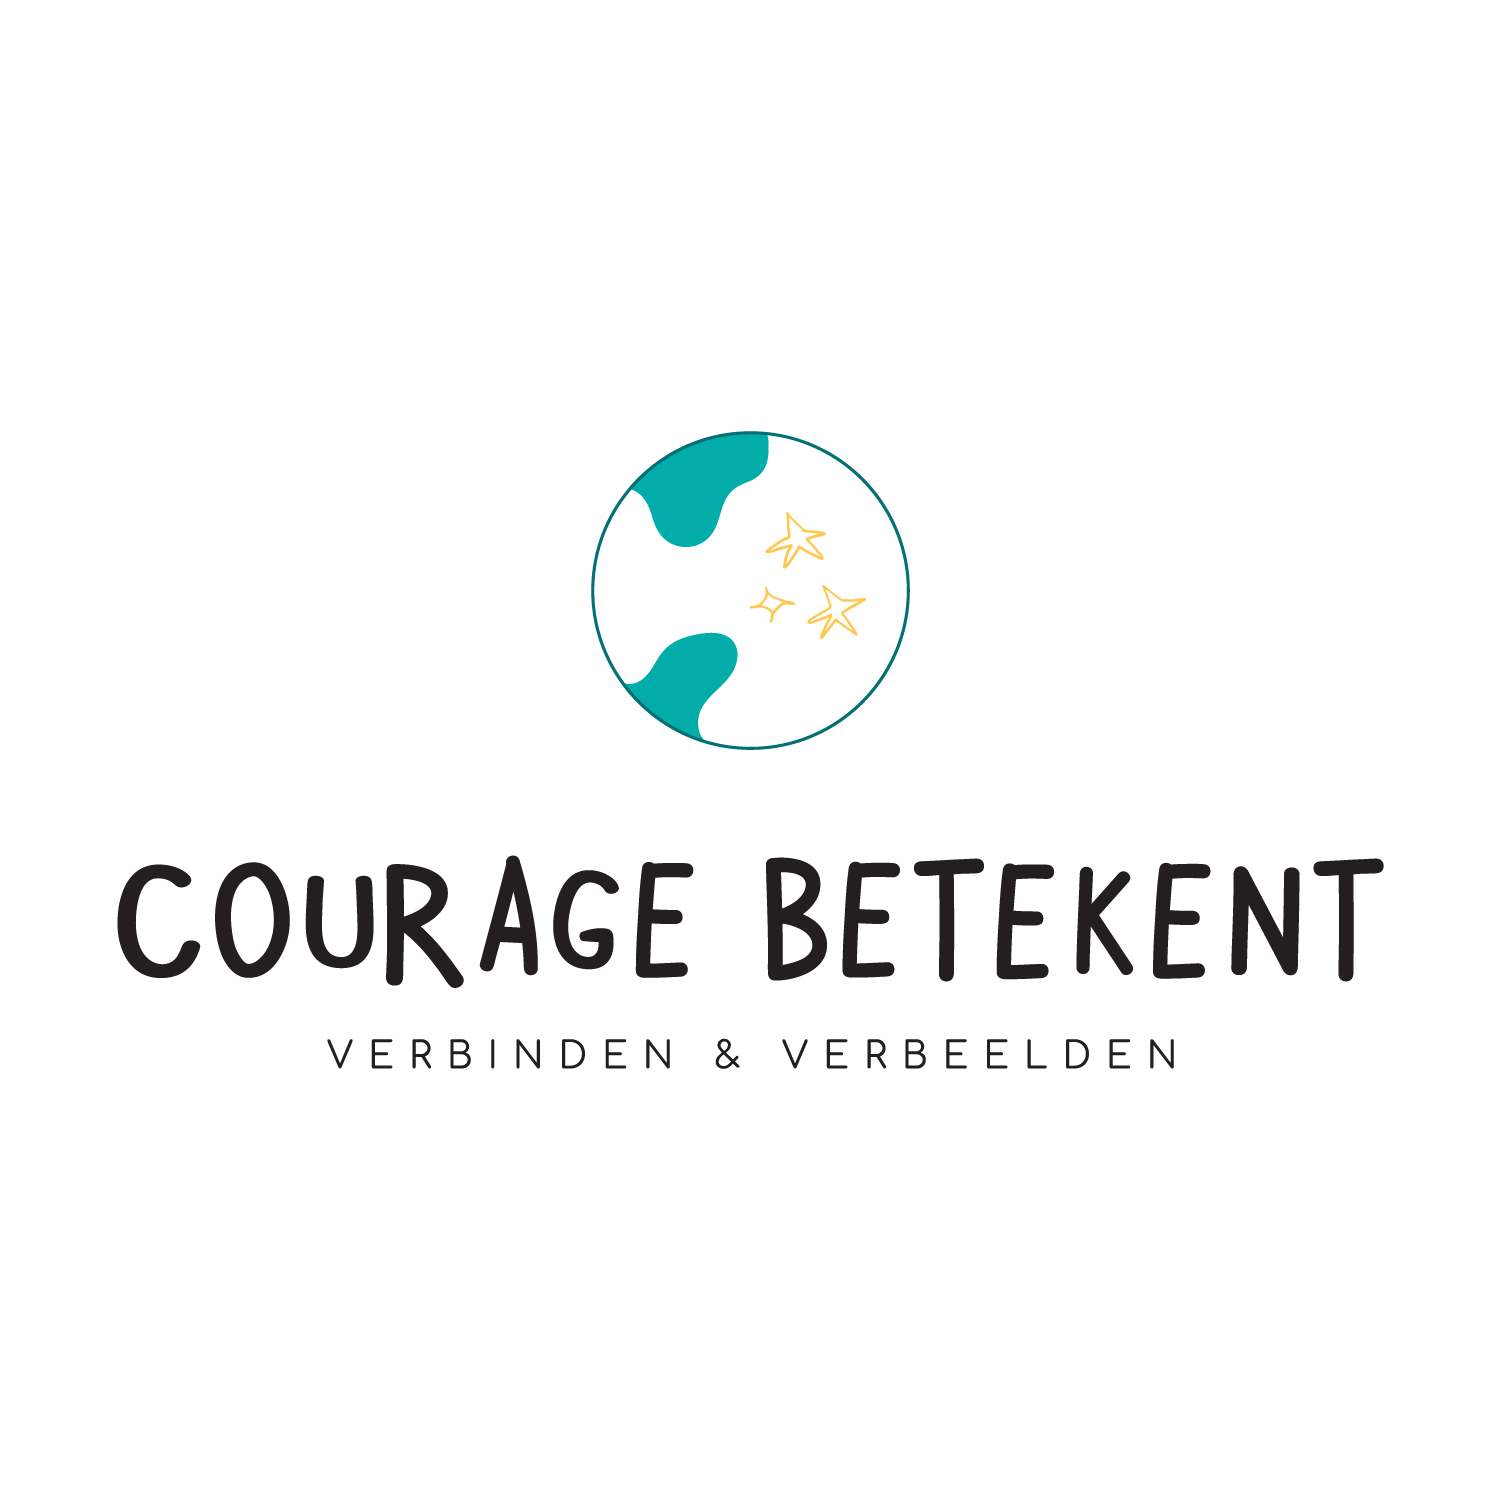 Branding: Courage Betekent | Eunoia Studio